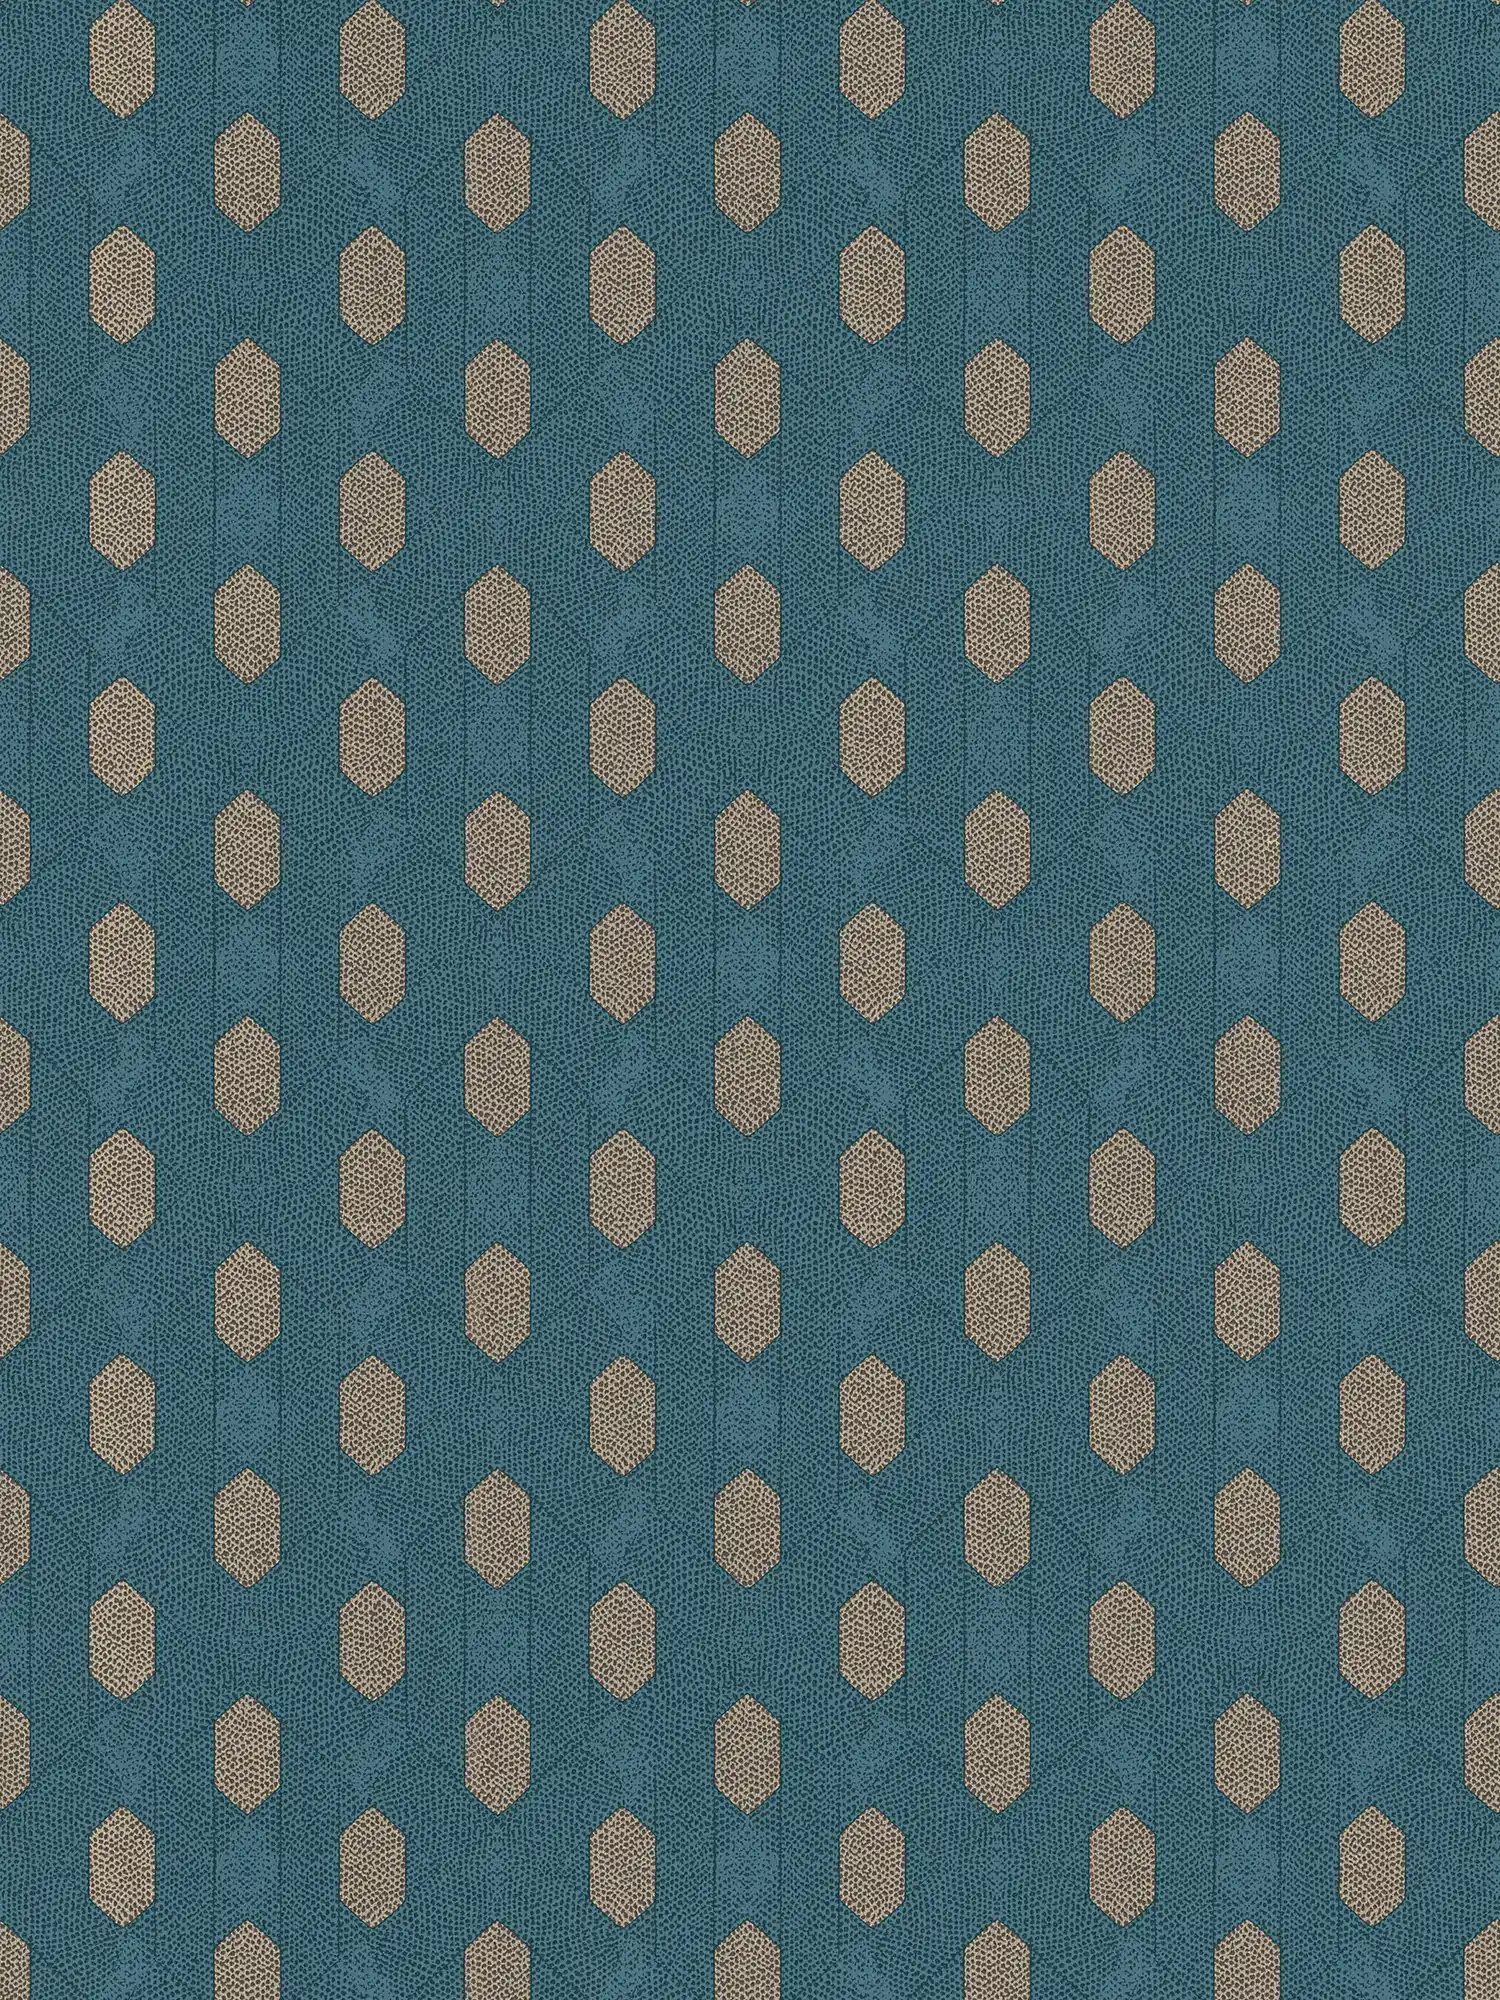 Blaue Tapete mit geometrische Muster & Gold Details – Blau, Braun, Beige
